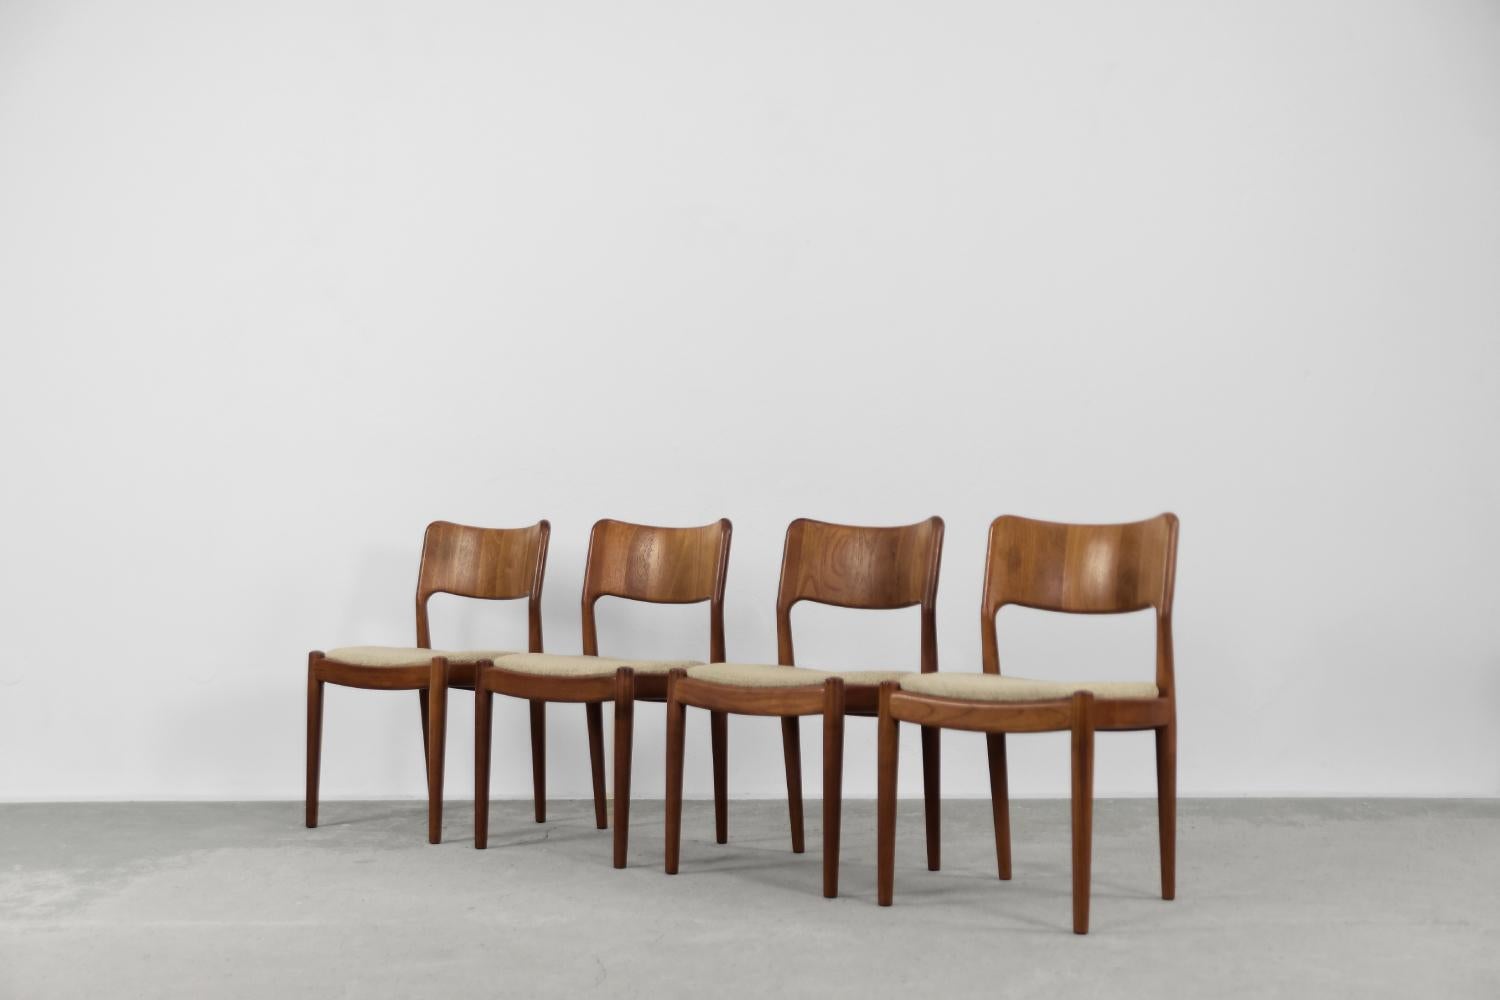 Dieses Set aus vier modernistischen Stühlen wurde in den 1960er Jahren von dem dänischen Hersteller Glostrup Møbelfabrik produziert. Sie sind aus massivem Teakholz in einem warmen Braunton gefertigt. Der Sitz ist mit einem hochwertigen, dicken,